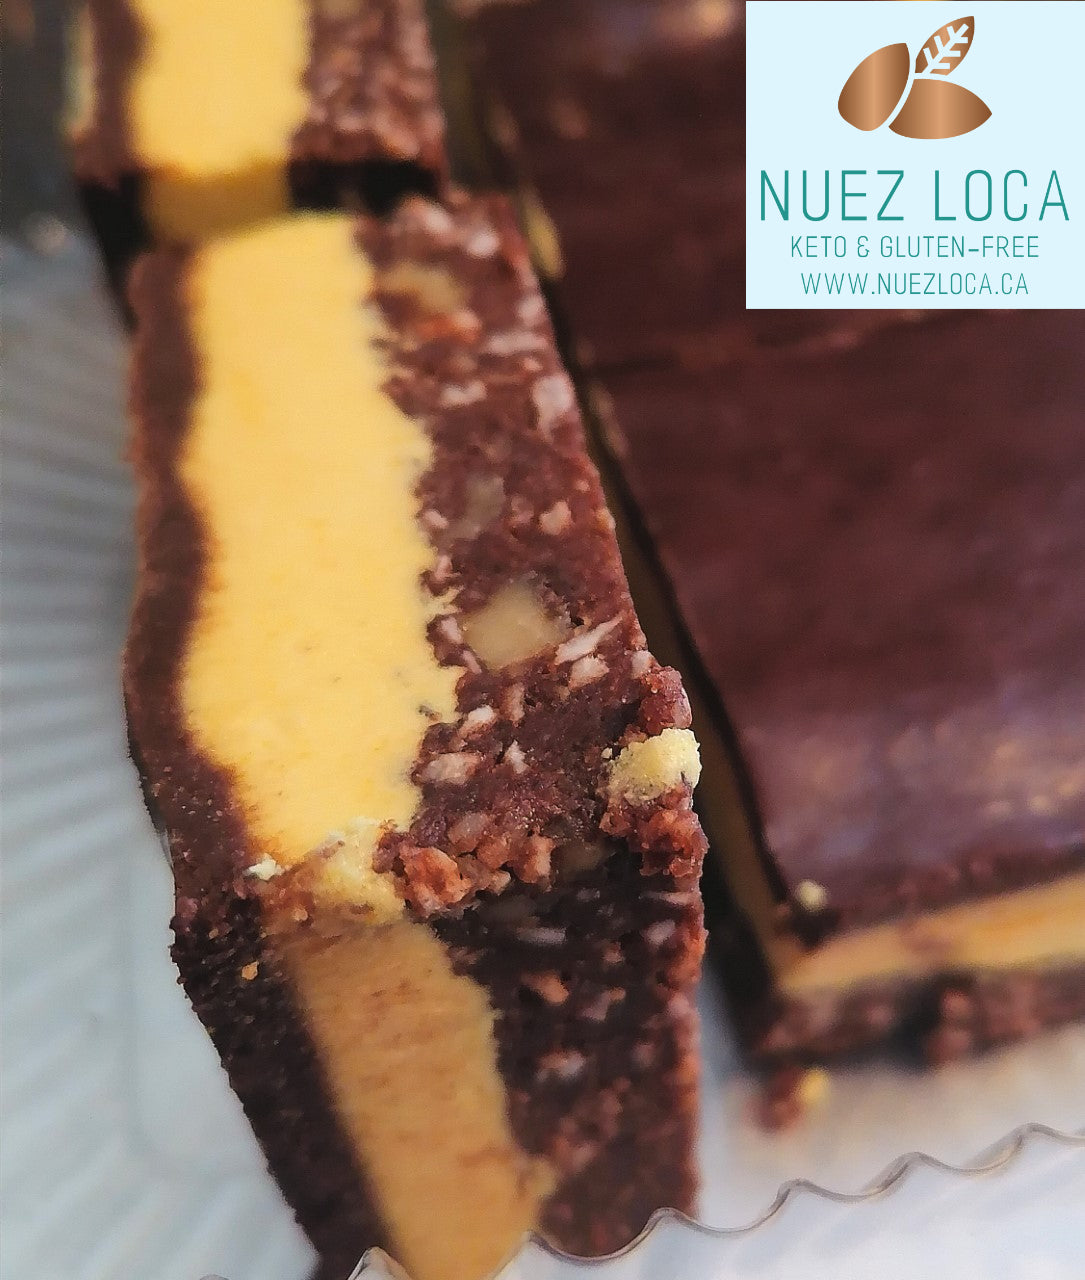 Nuez Loca Sugar Free/Gluten Free Desserts